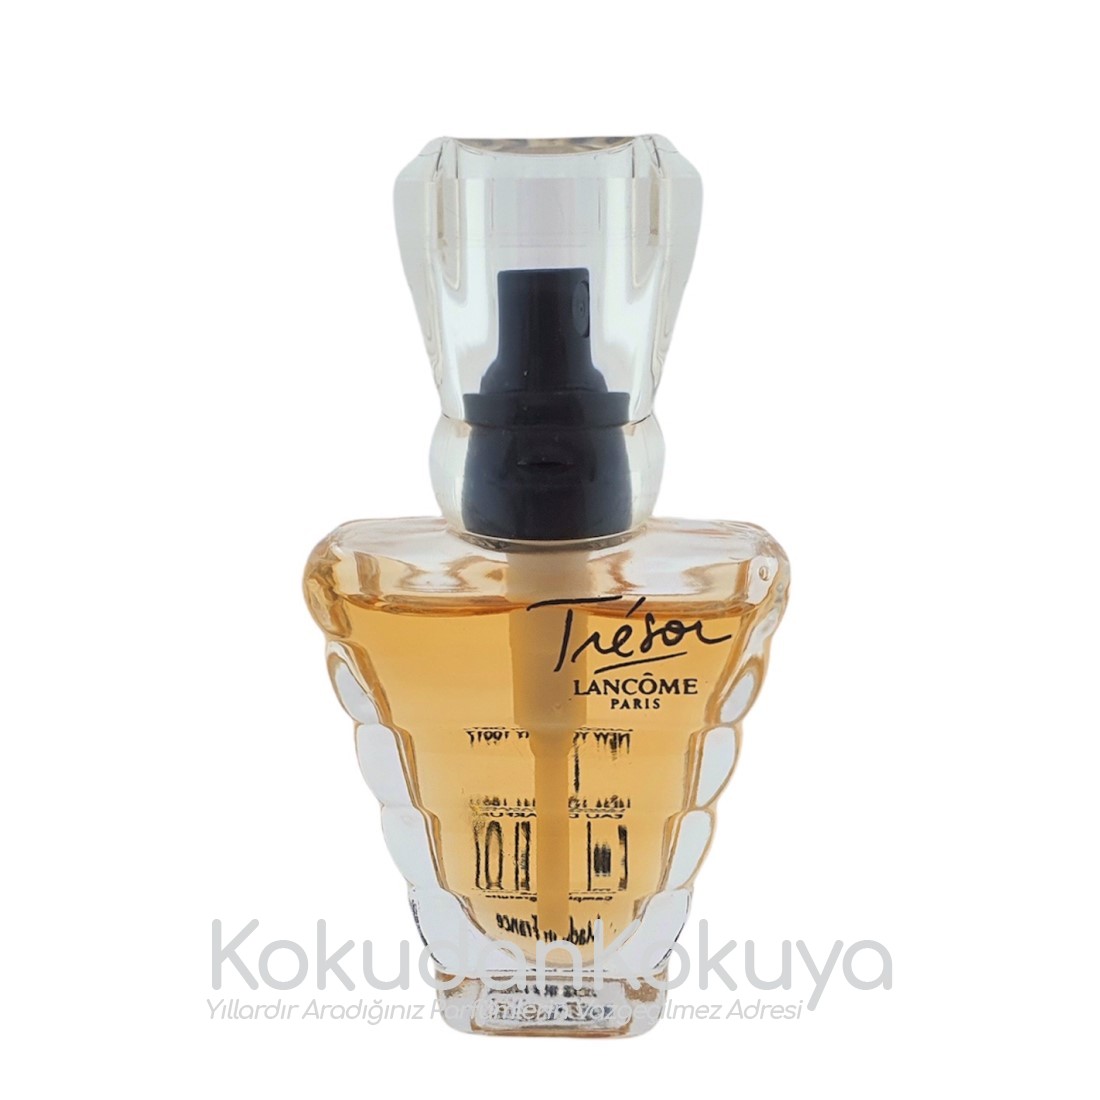 LANCOME Tresor (Vintage) Parfüm Kadın 5ml Minyatür (Mini Perfume) Sprey 